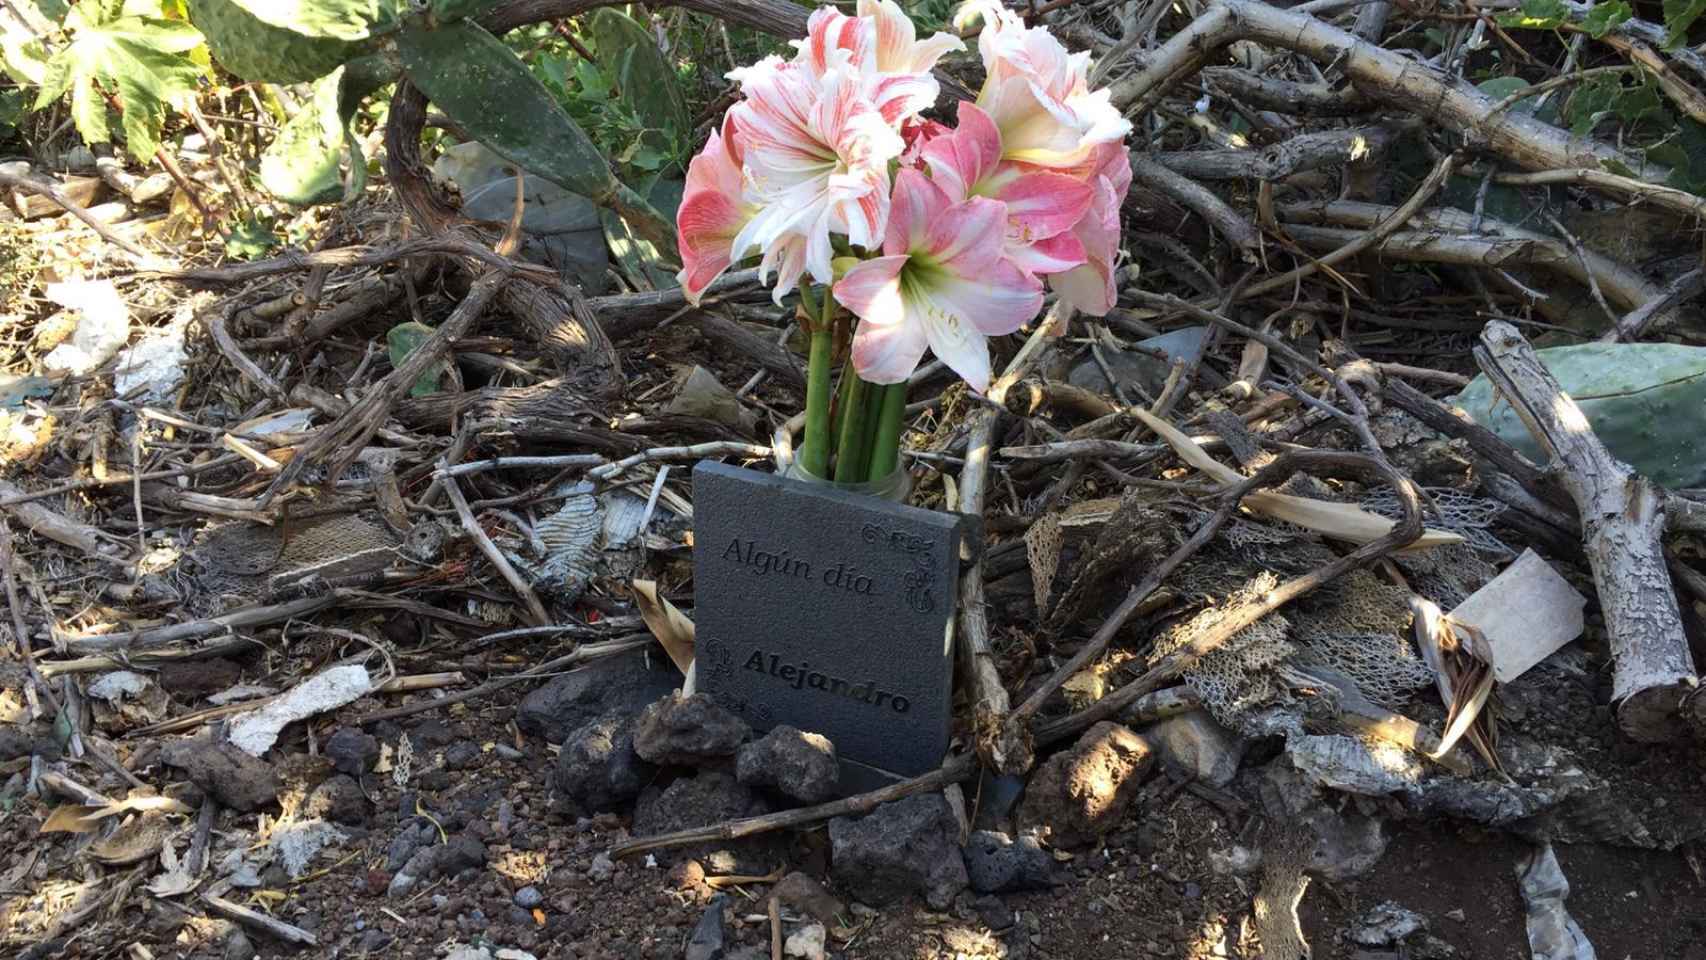 María del Mar ha puesto una placa en memoria de su hijo en el lugar en el que hallaron su coche